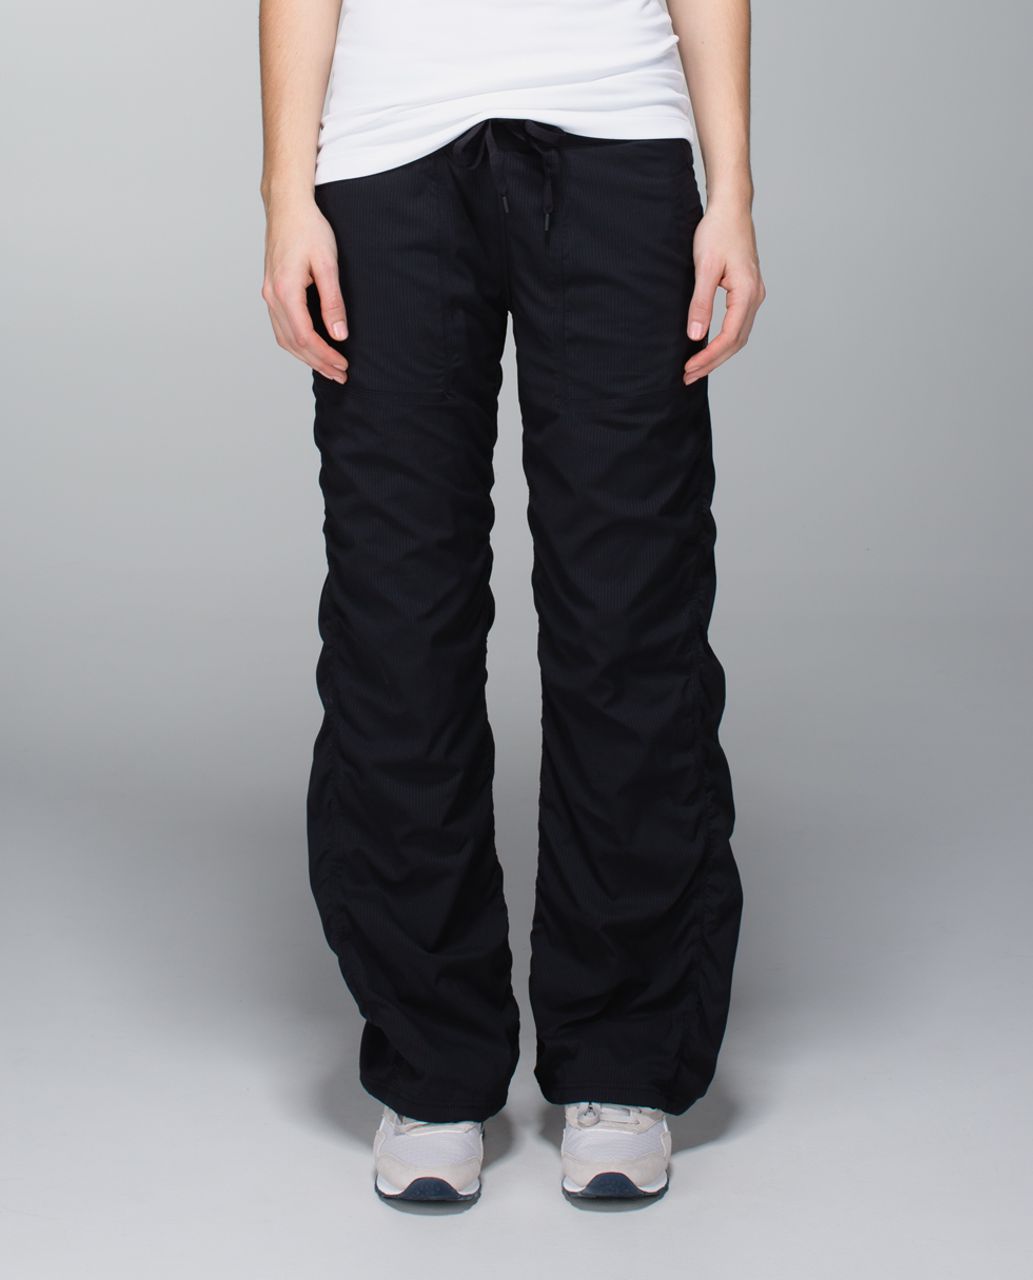 Lululemon Studio Dance Pants Lined Size 8 10 Full Length